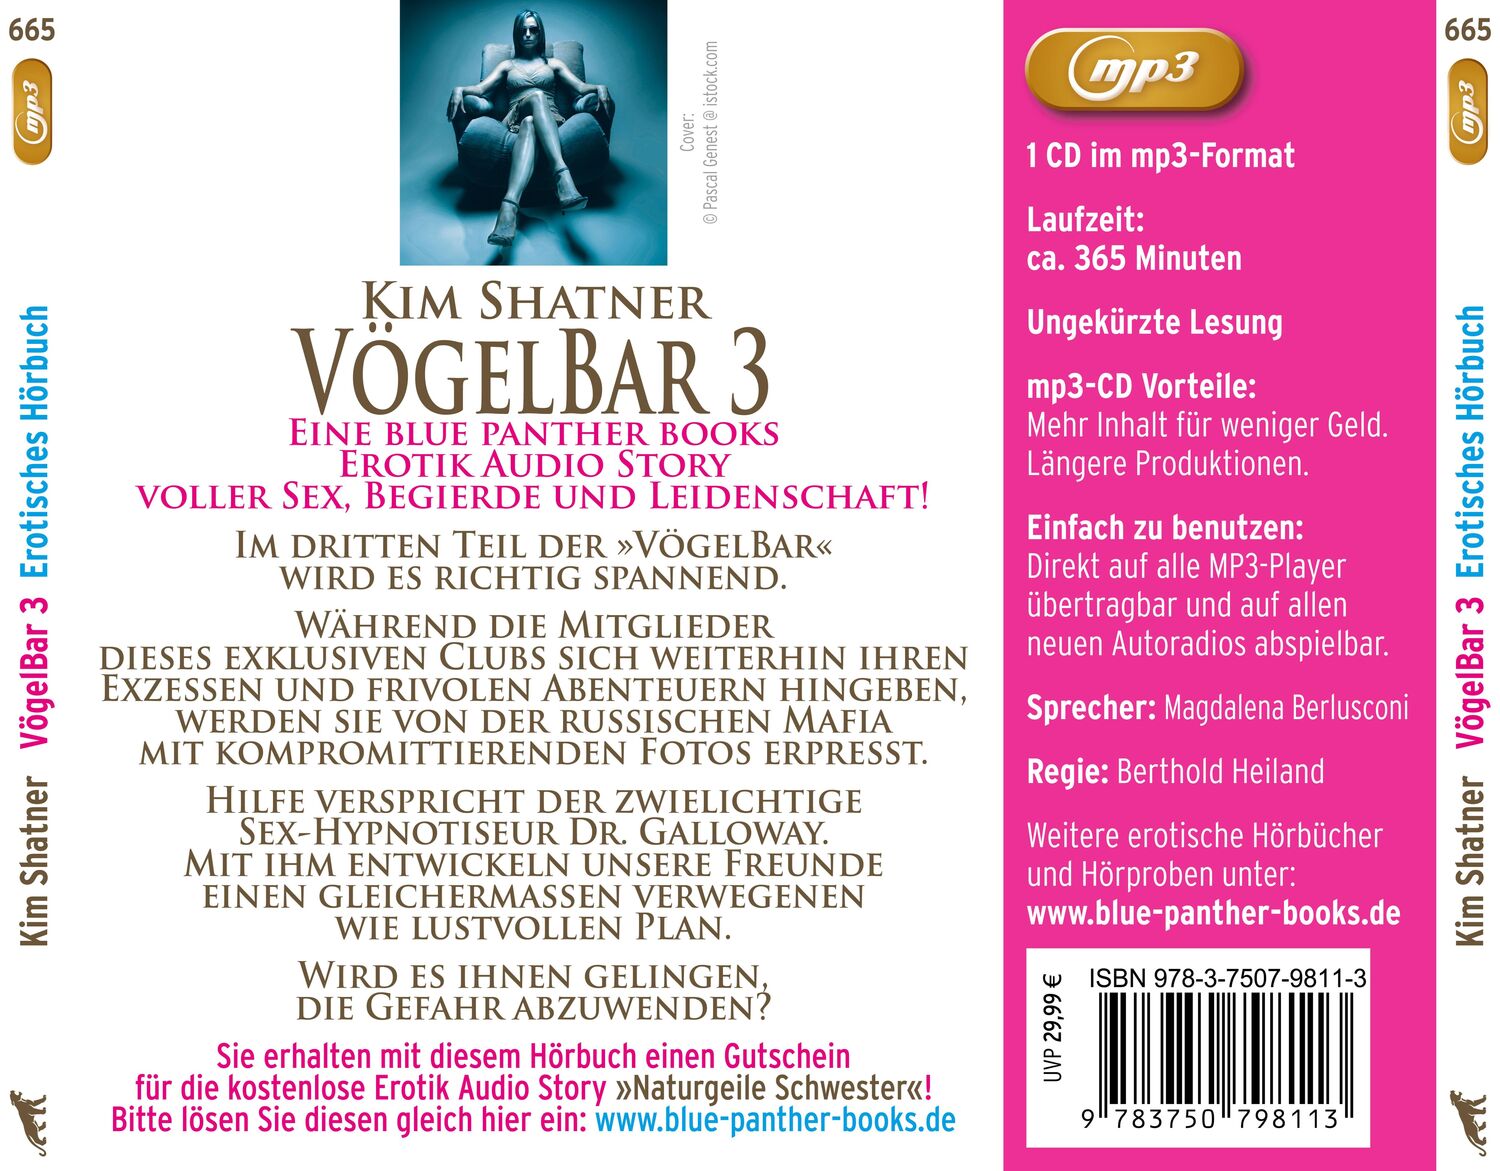 Rückseite: 9783750798113 | VögelBar 3 Erotik Audio Story Erotisches Hörbuch MP3CD | Kim Shatner